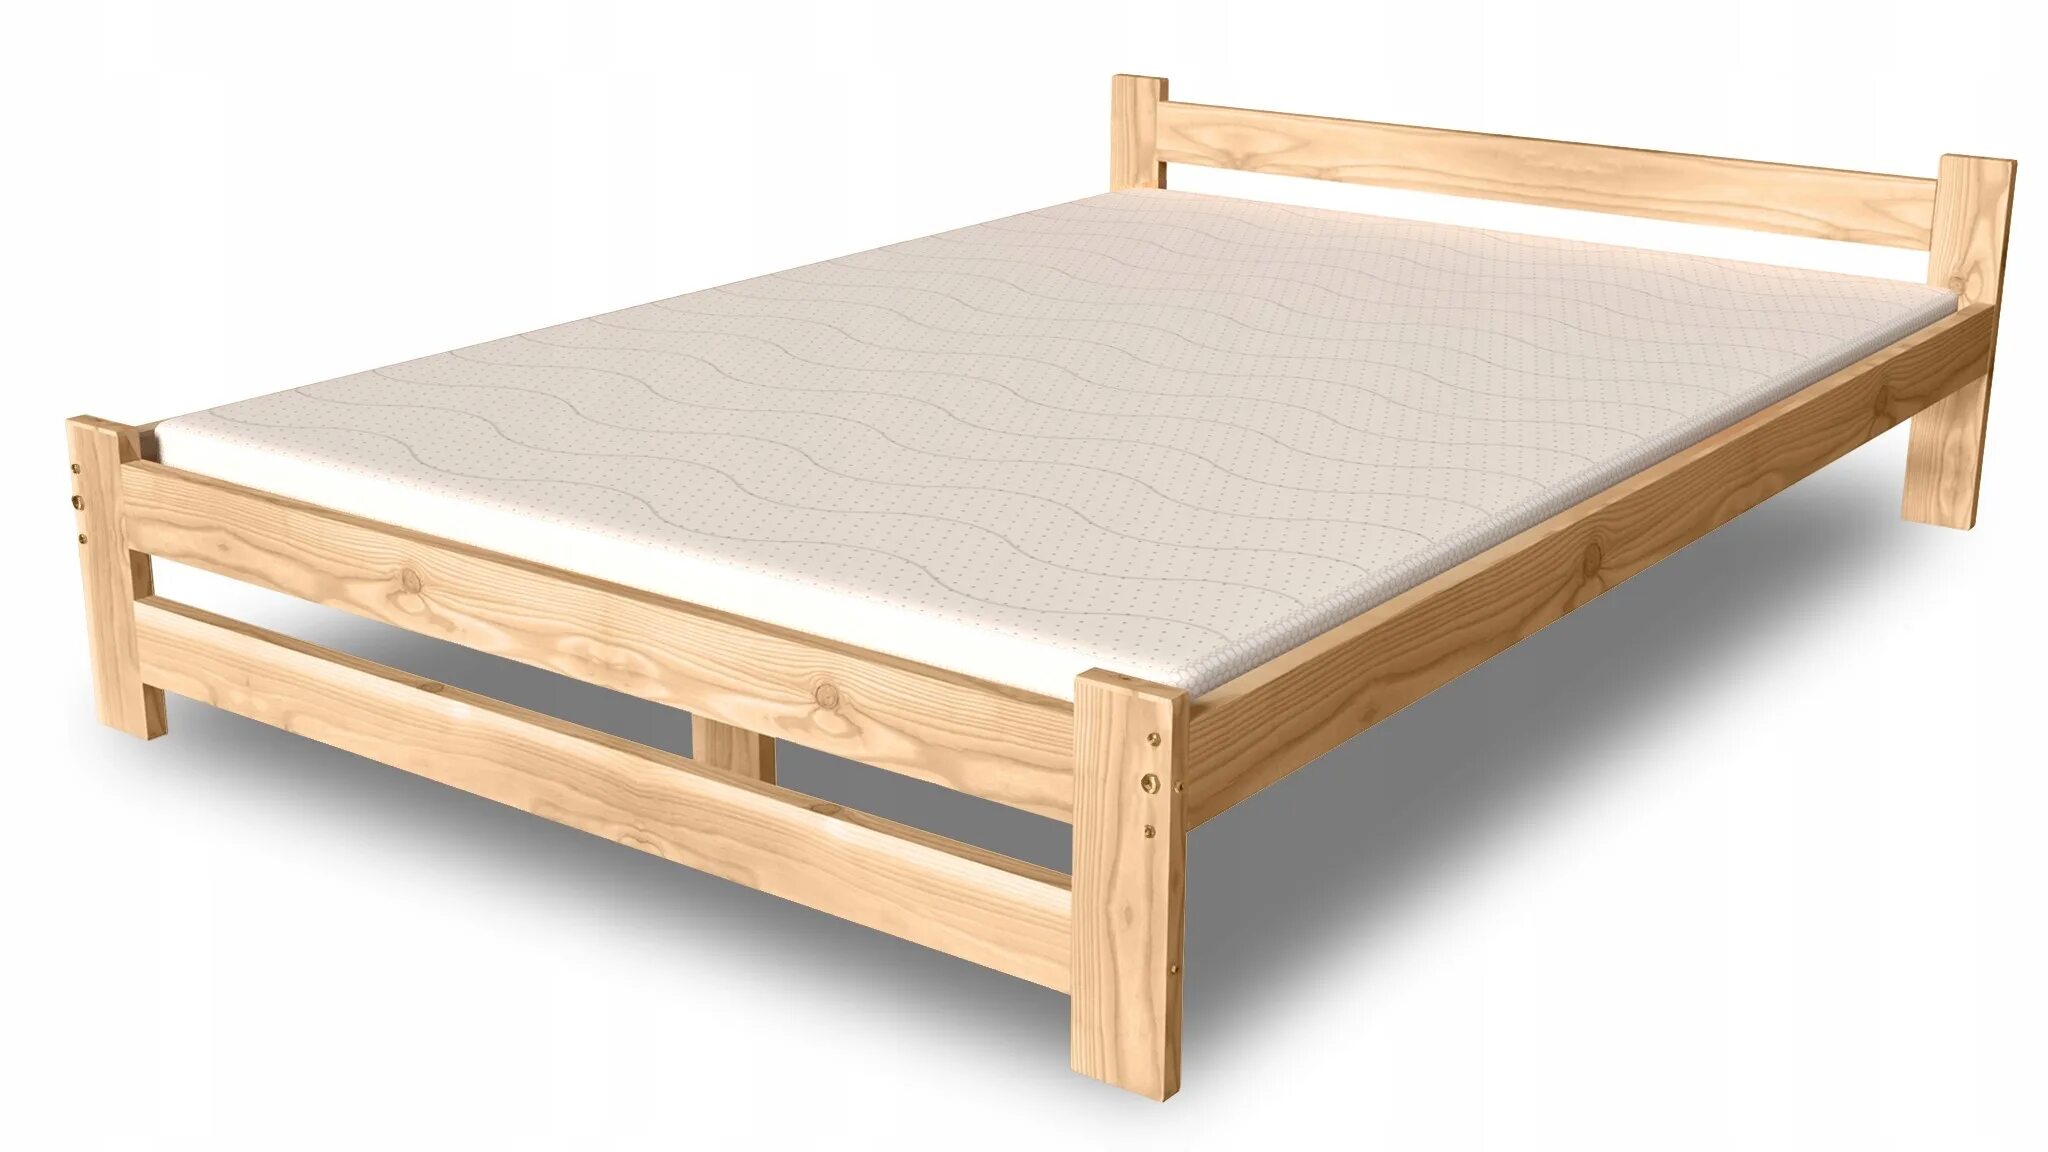 Купить деревянную кровать недорого. Кровать ikea 160 200 из массива сосны. Кровать из массива сосны 160х200 икеа. Кровать 1600 "Грин"(массив сосны). Кровать икеа деревянная односпальная 90х200.